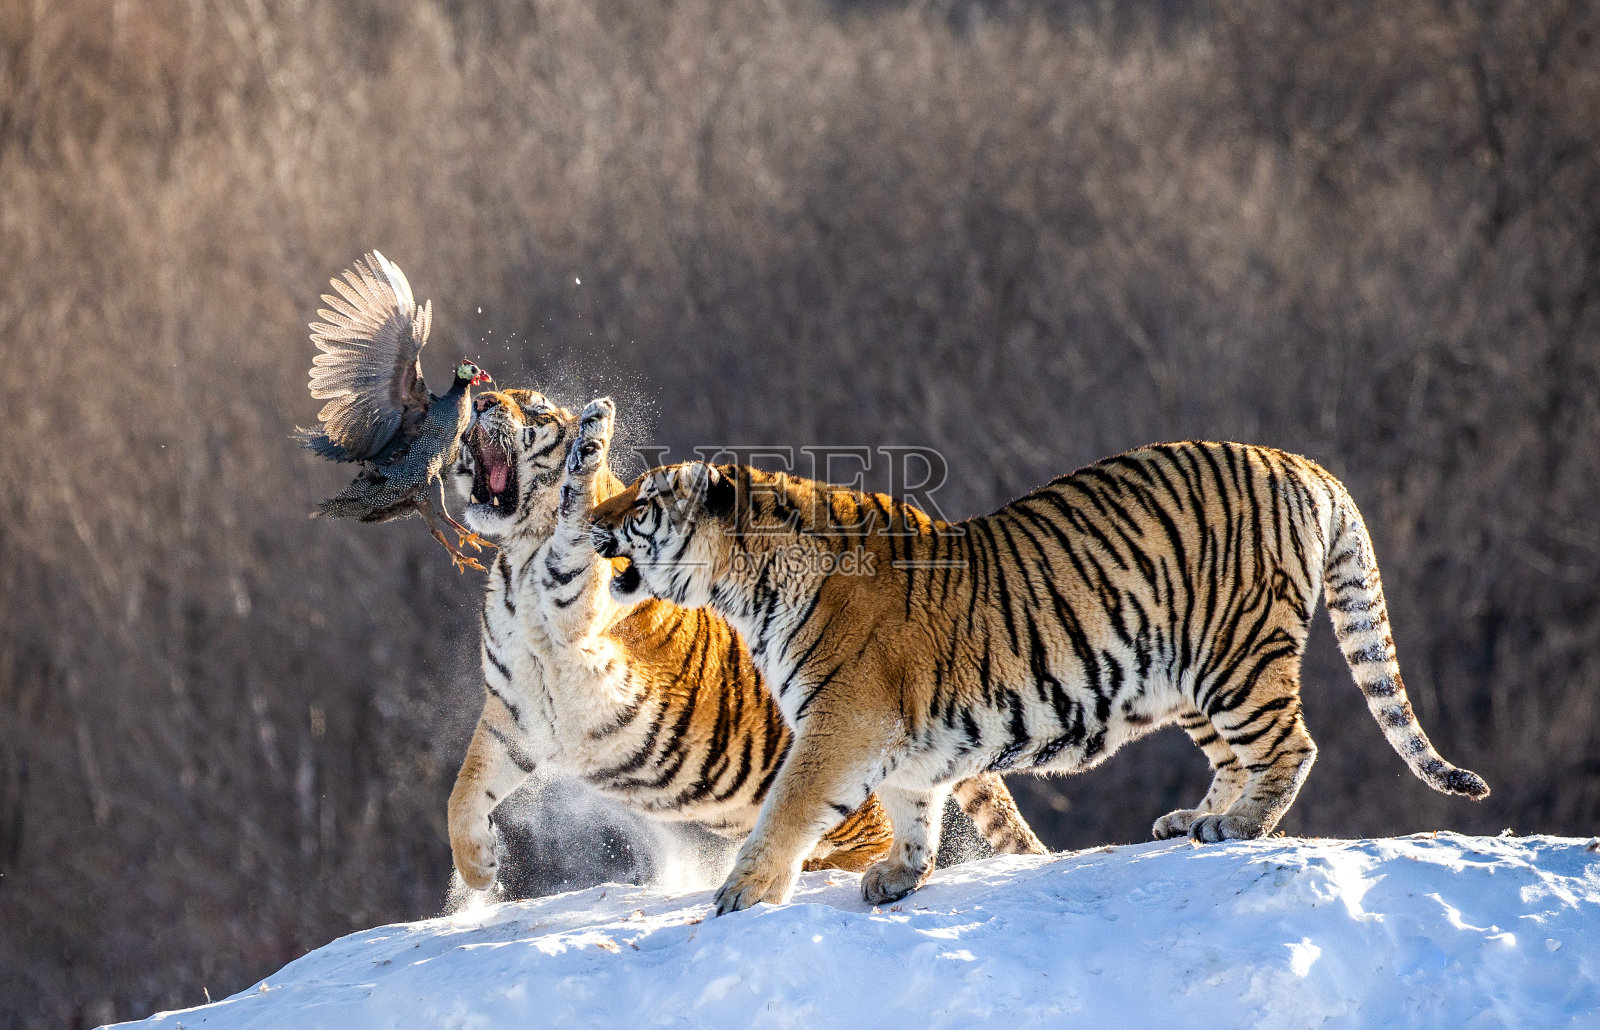 几只东北虎站在白雪覆盖的小山上捕捉猎物。中国哈尔滨。牡丹江市。Hengdaohezi公园。西伯利亚虎公园。照片摄影图片